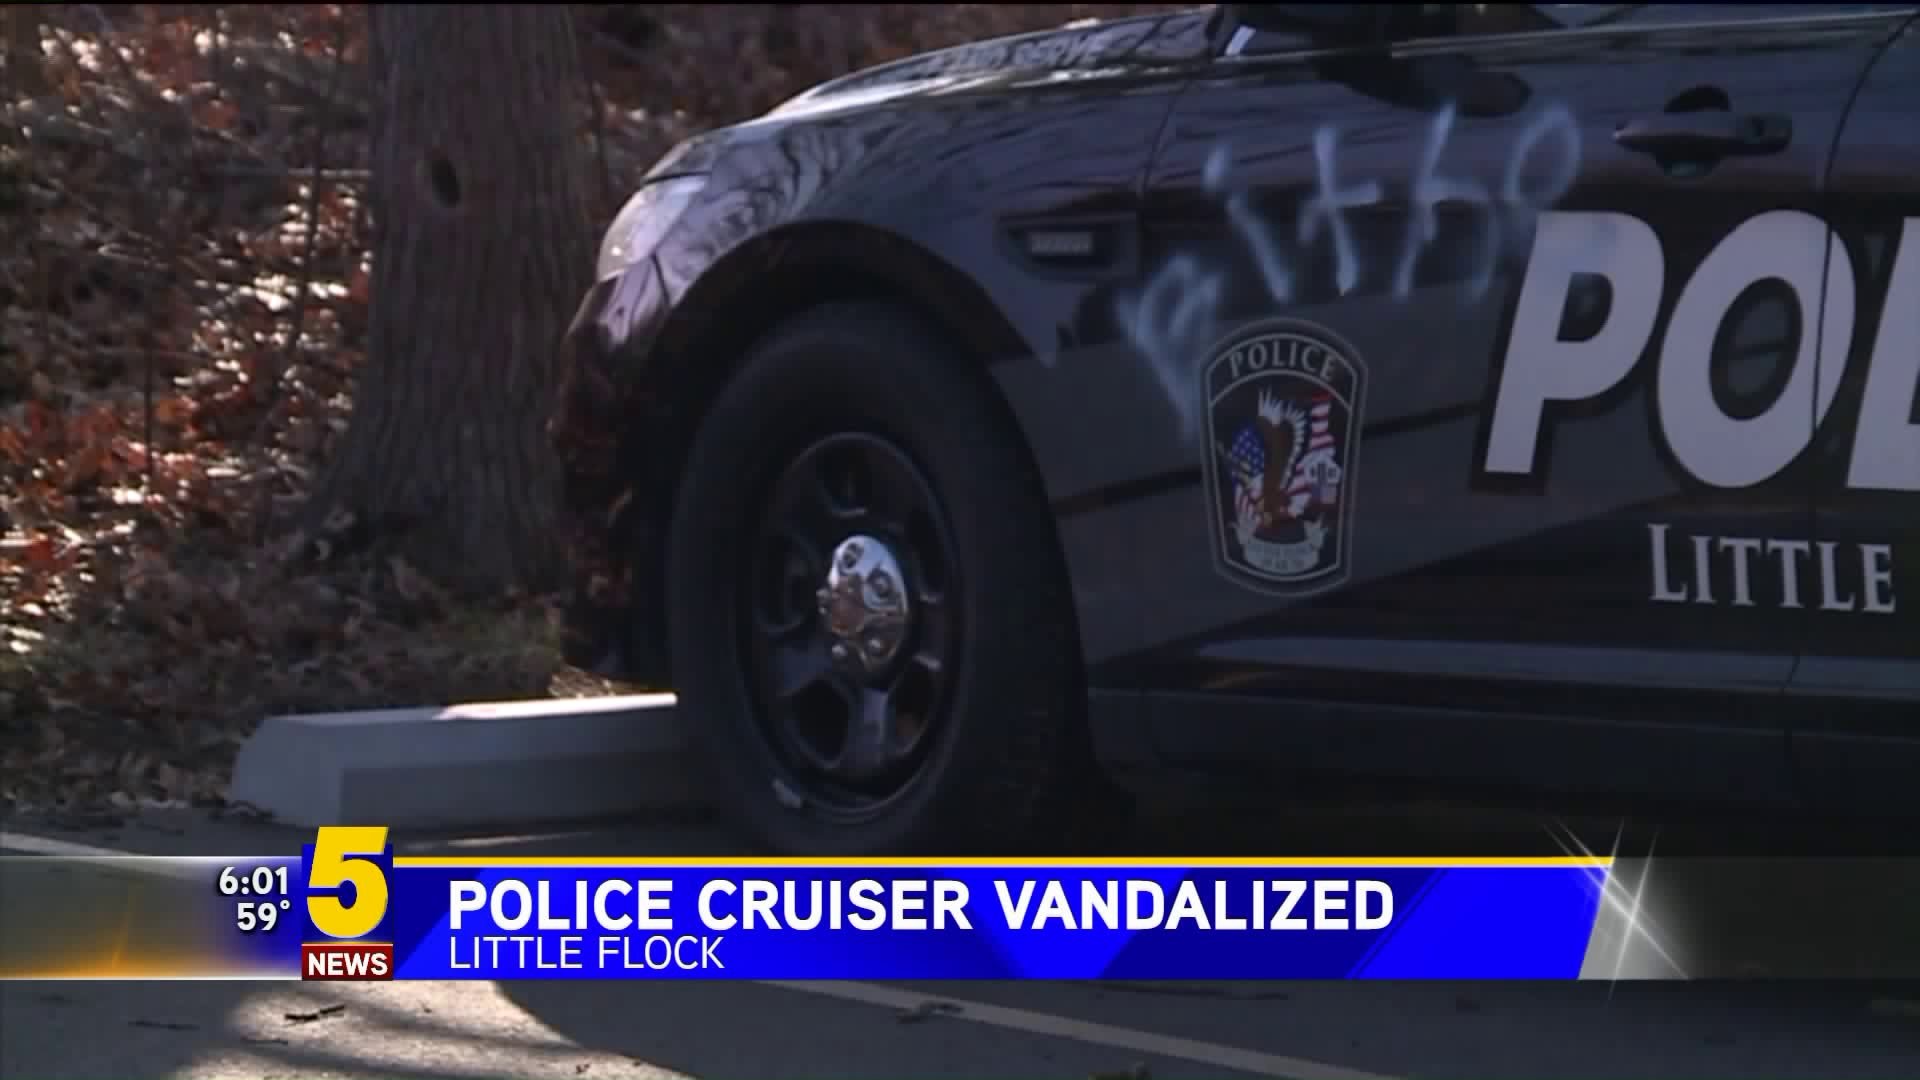 Little Flock Police Cruiser Vandalized